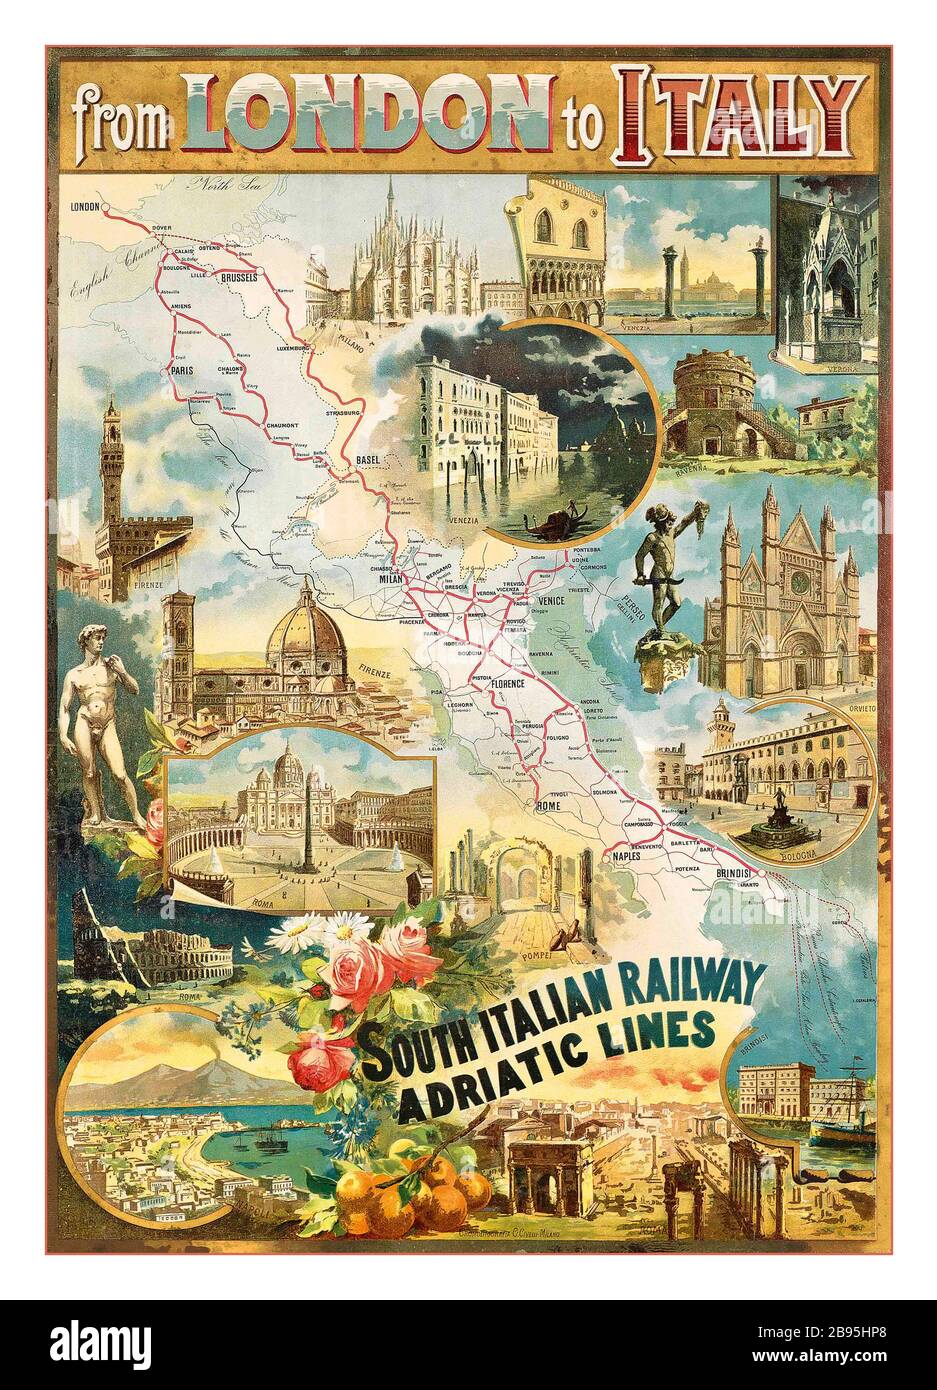 London nach Italien 1900 Eisenbahntransport-Vintage Travel Poster 1900s VON LONDON NACH ITALIEN mit süditalienischen Bahnadria-Linien, Farblithograph, gedruckt von G.Civelli, Mailand, Stockfoto